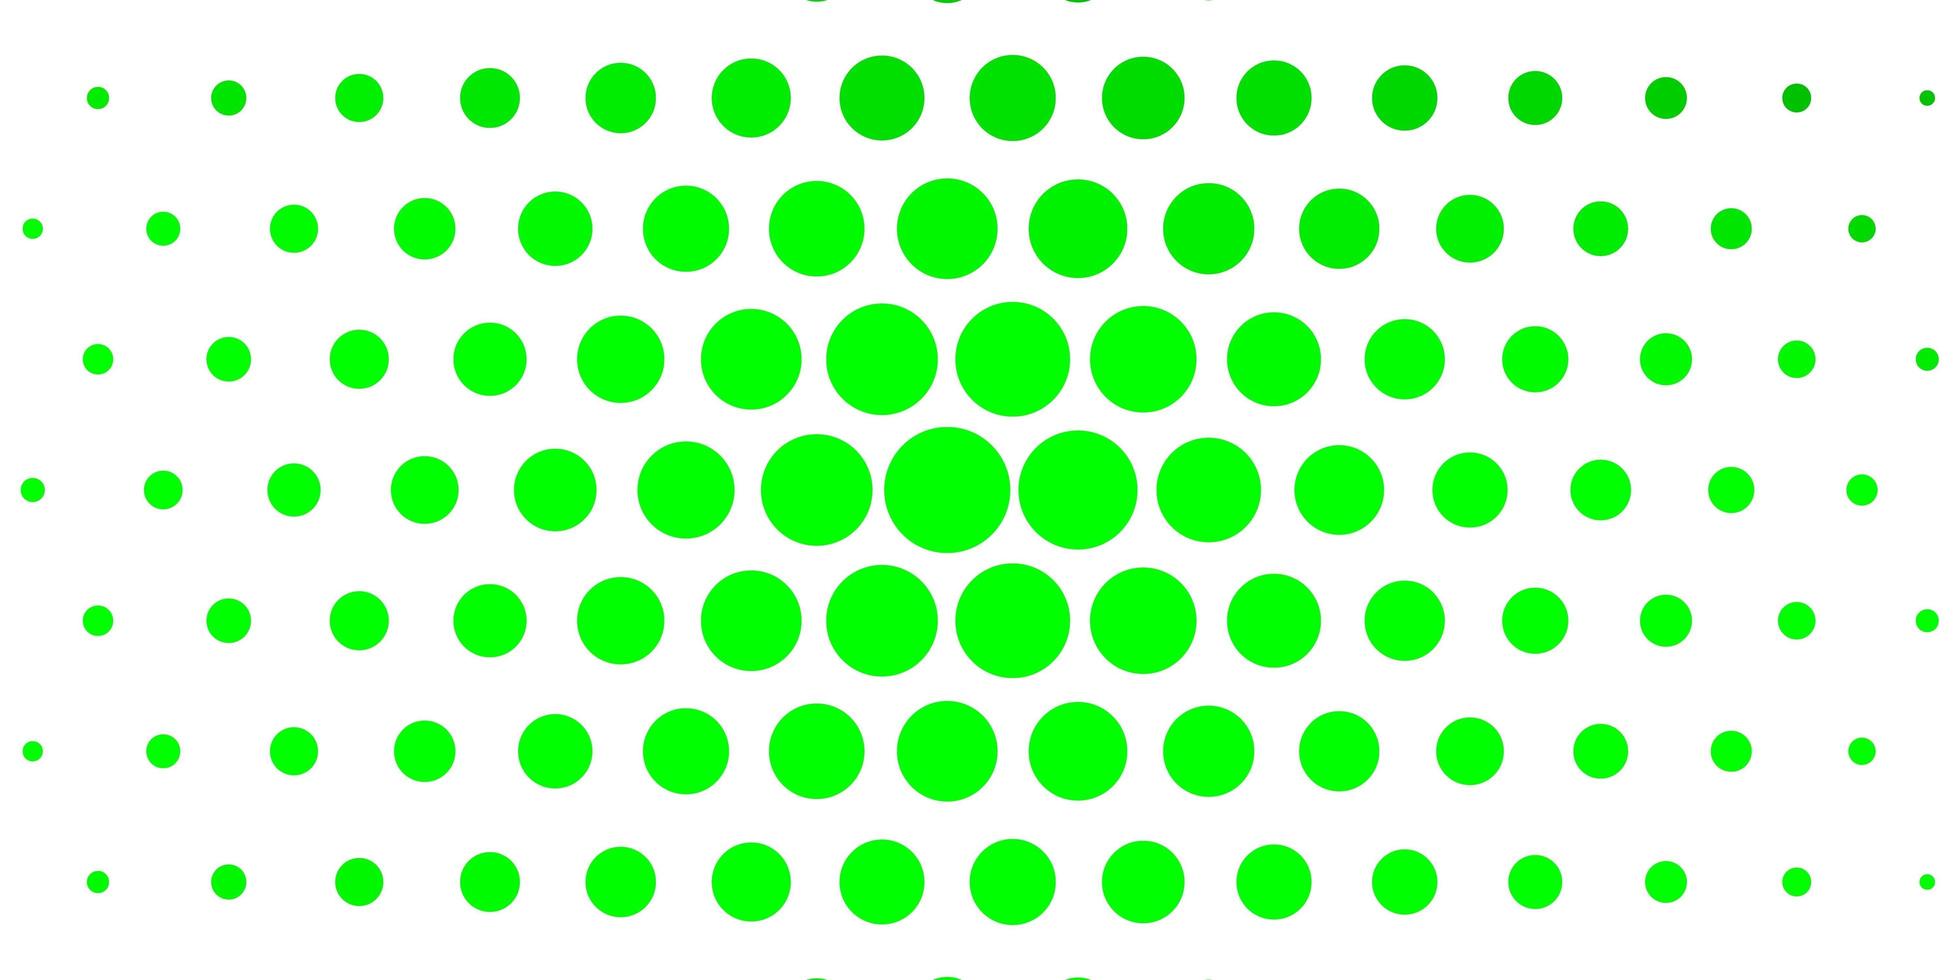 pano de fundo de vetor verde claro com círculos ilustração colorida com pontos de gradiente no padrão de estilo da natureza para folhetos de livretos